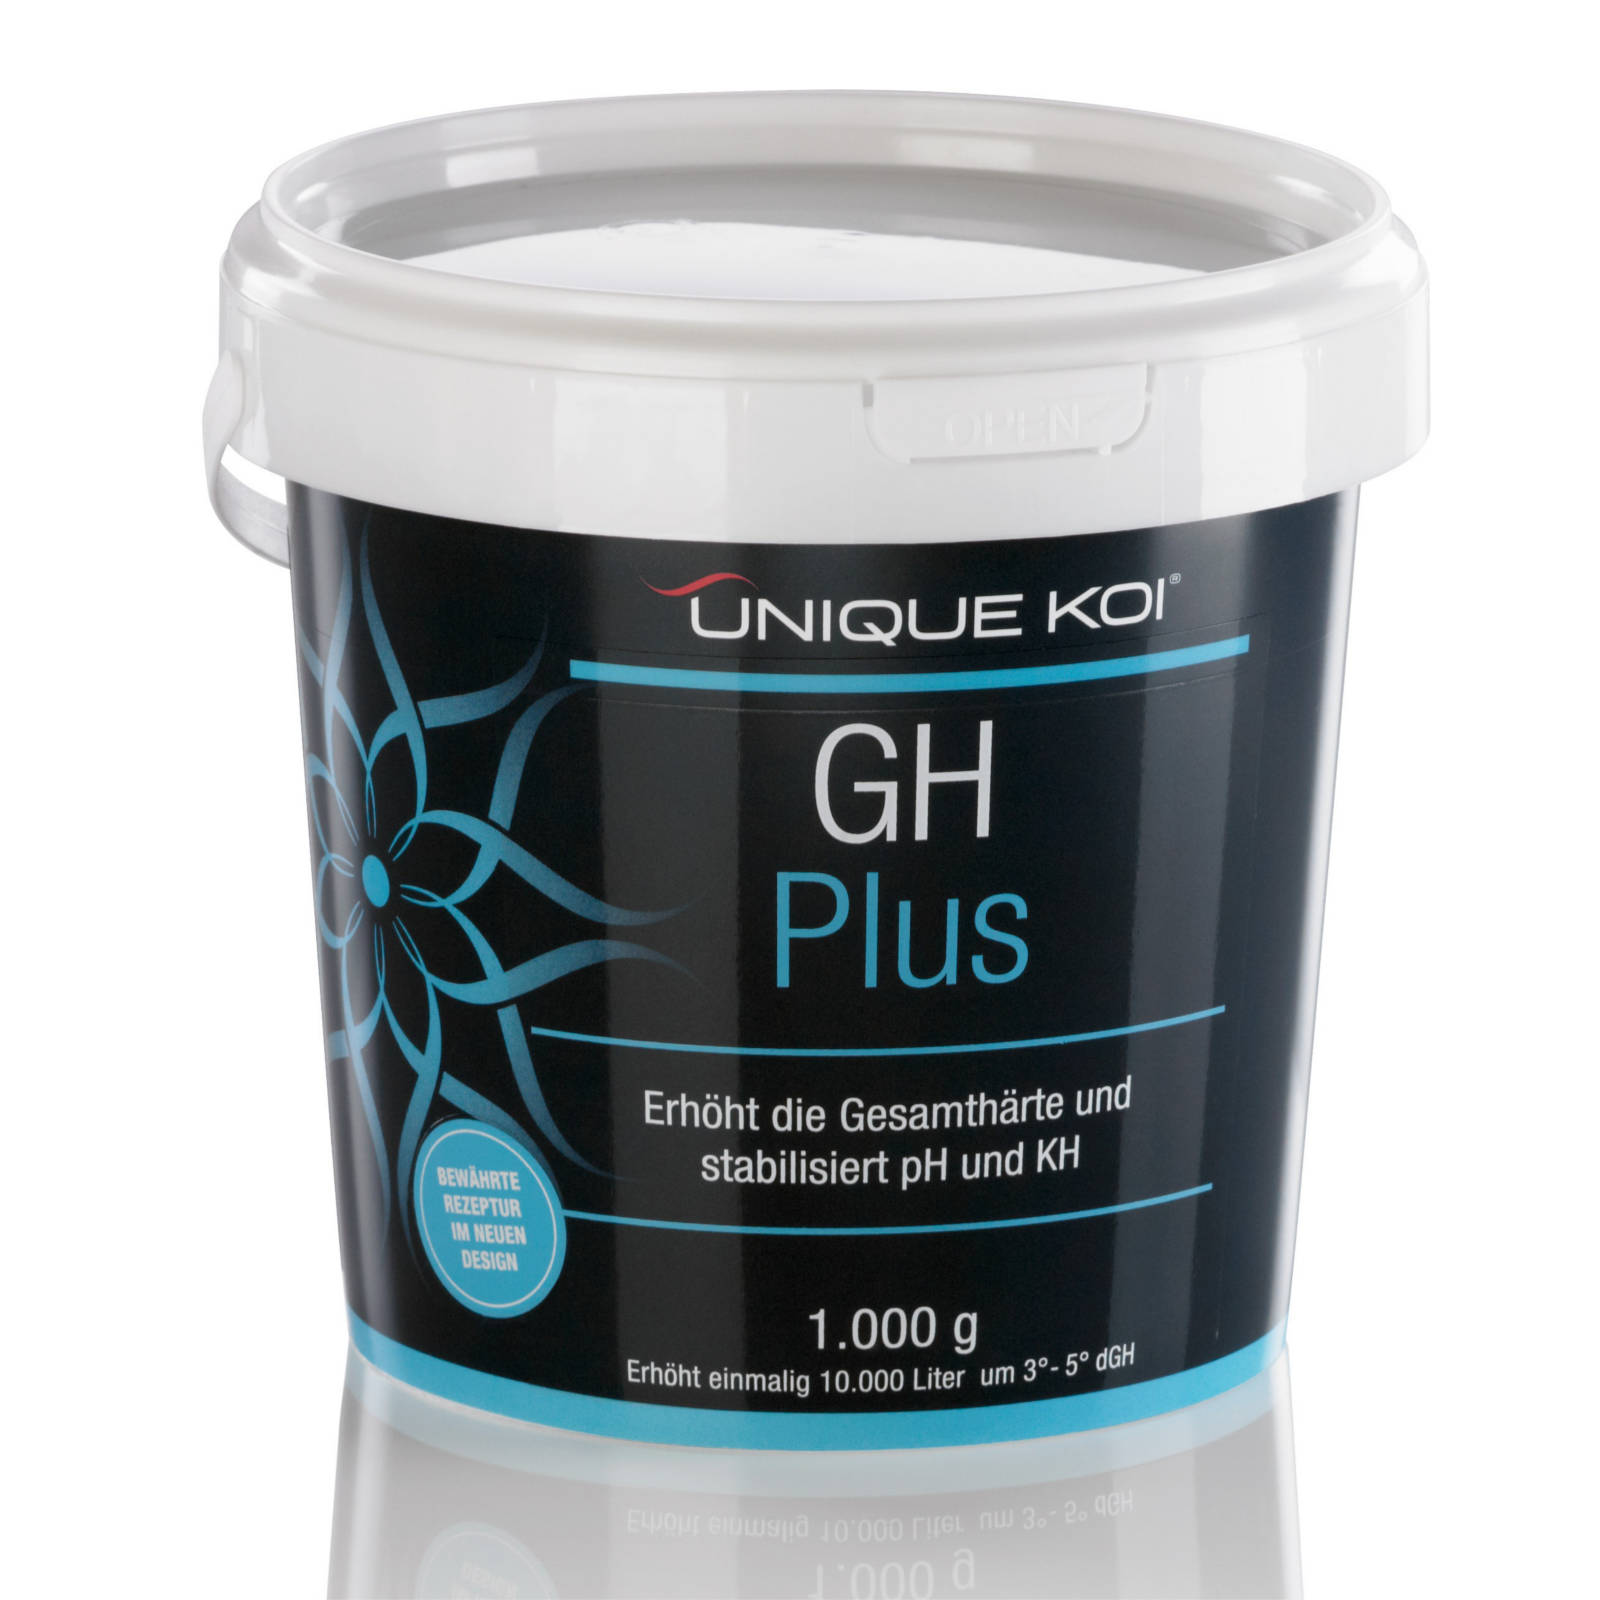 Unique Koi GH Plus Erhöht die Gesamthärte und stabilisiert pH und KH 1000g für 10000l